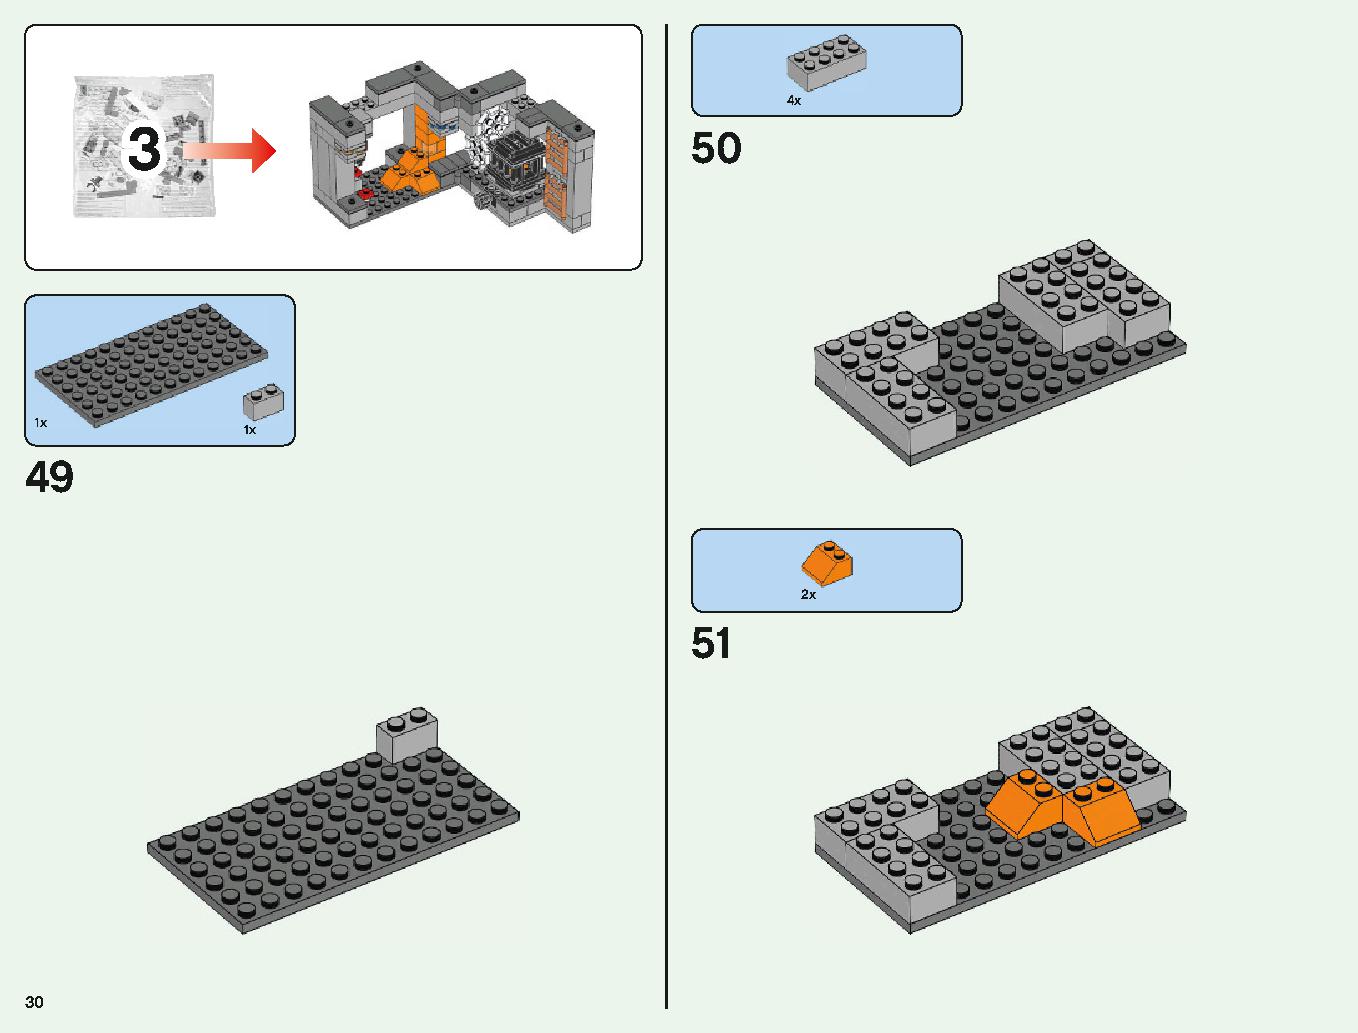 ベッドロックの冒険 21147 レゴの商品情報 レゴの説明書・組立方法 30 page